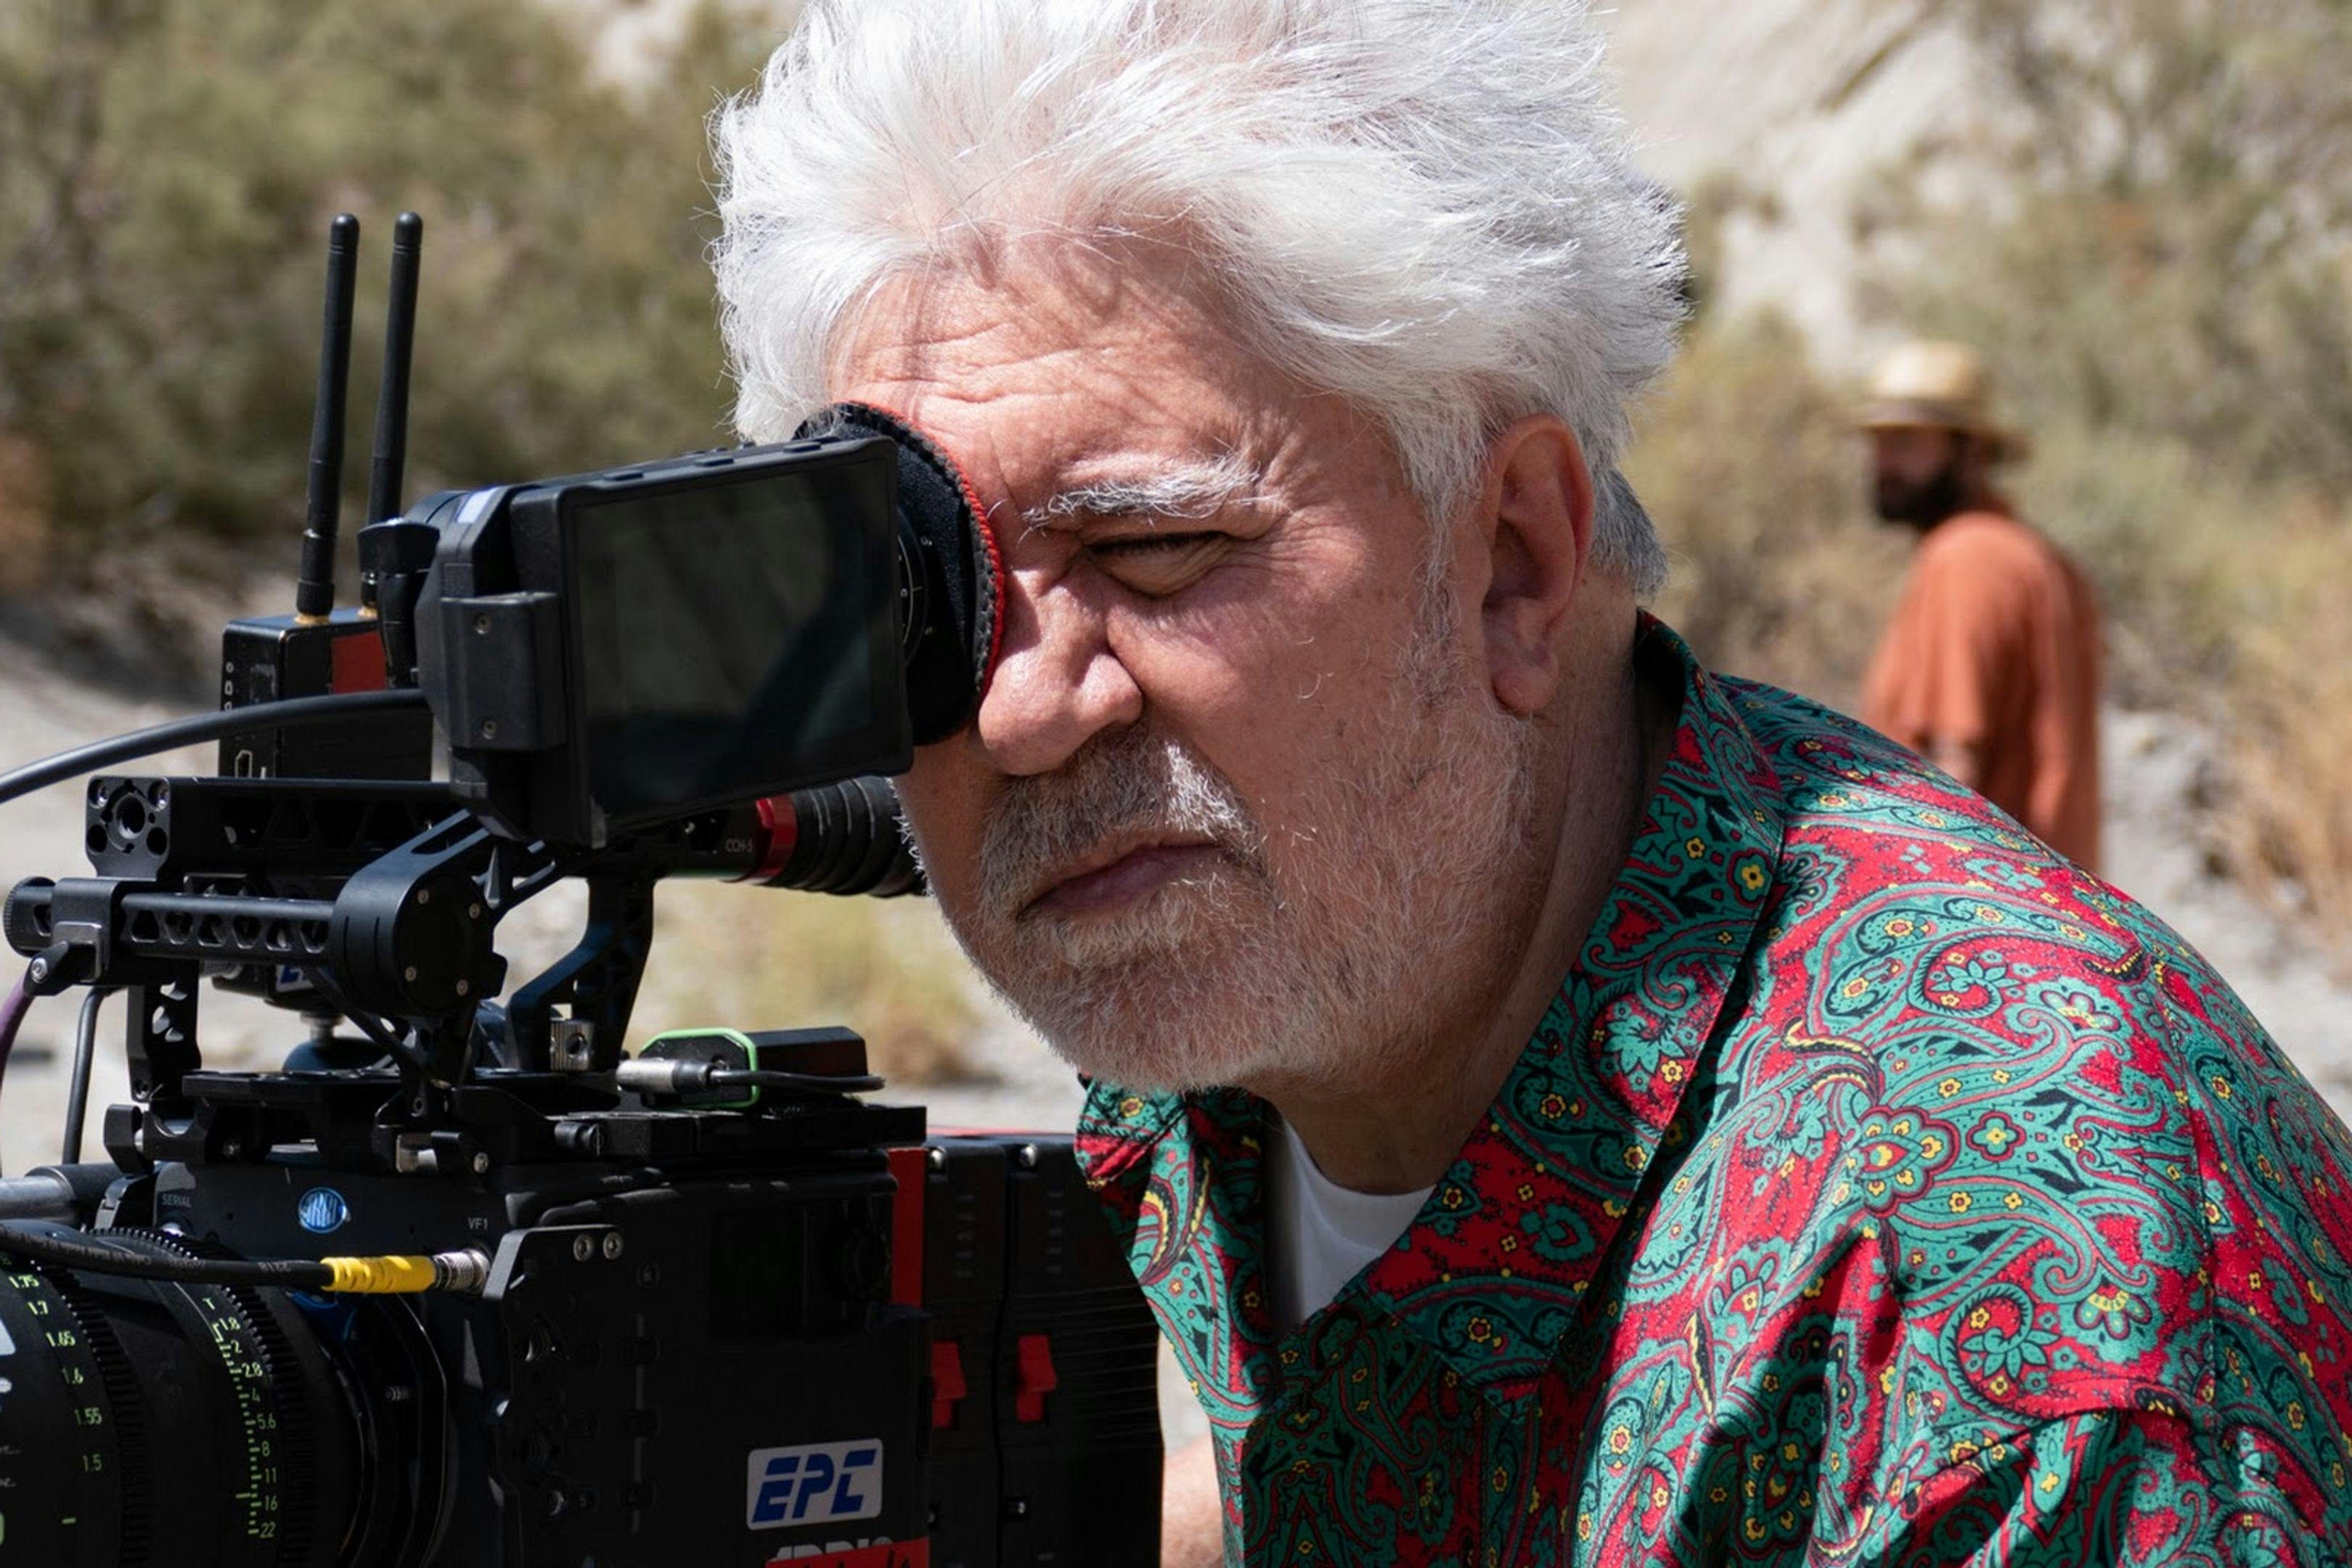 El director Pedro Almodóvar, durante el rodaje en Almería de su corto 'Extraña forma de vida'